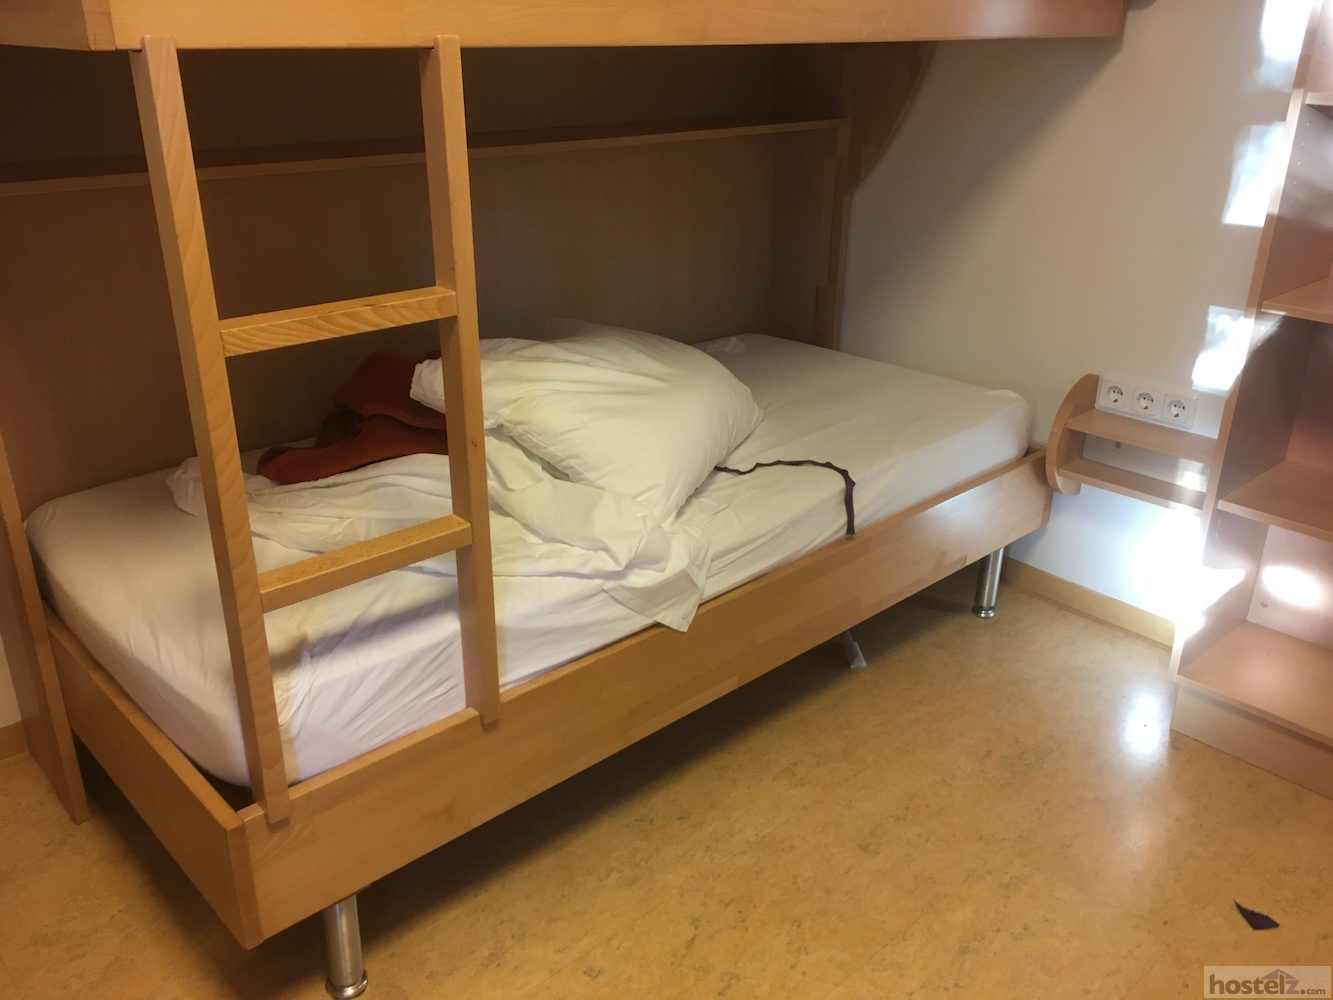 4 bed dorm room